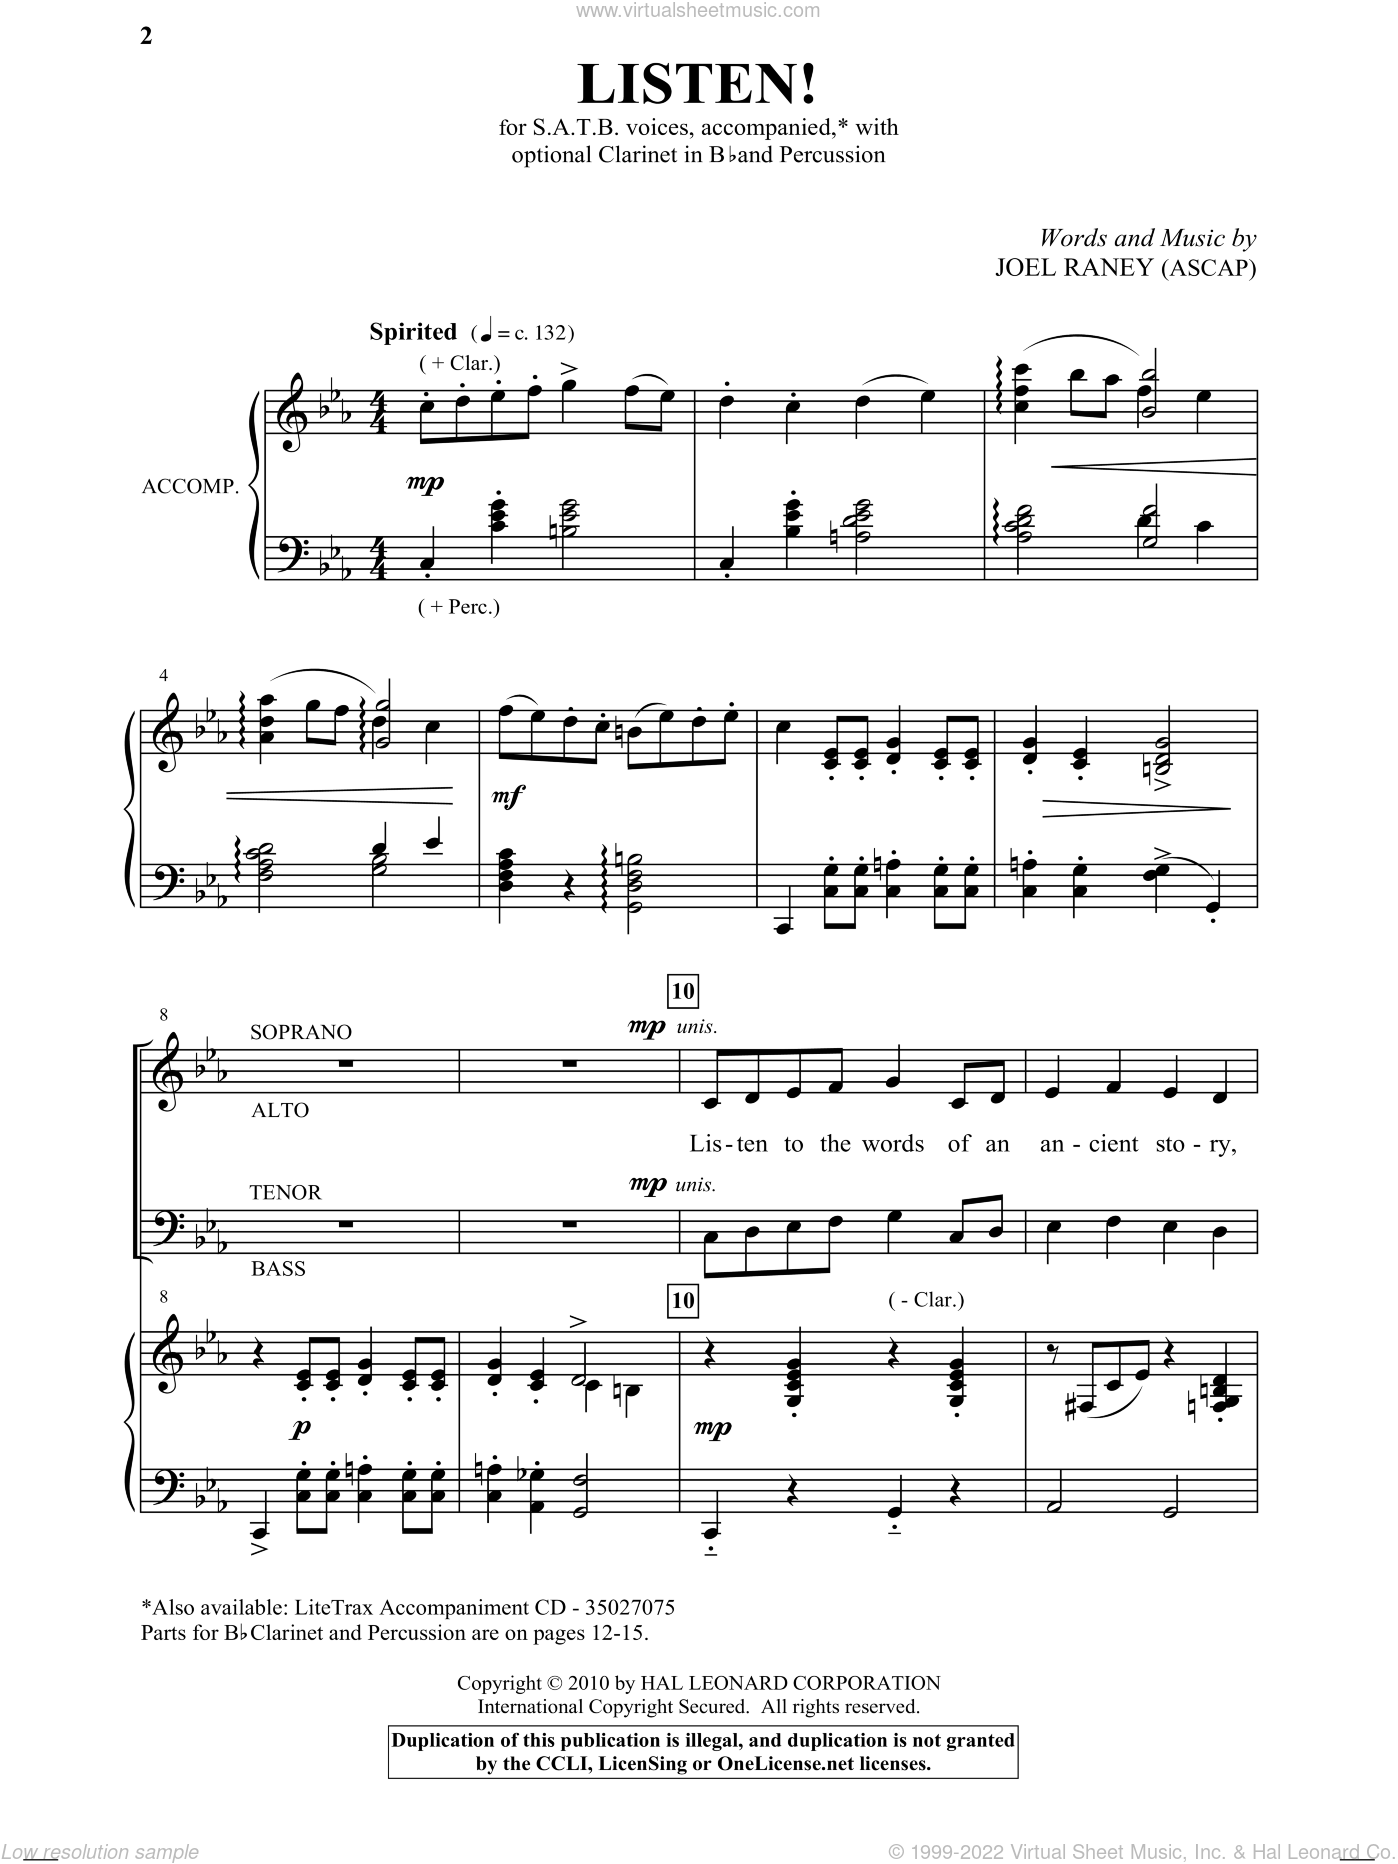 Listen Sheet Music For Choir Satb Soprano Alto Tenor Bass 